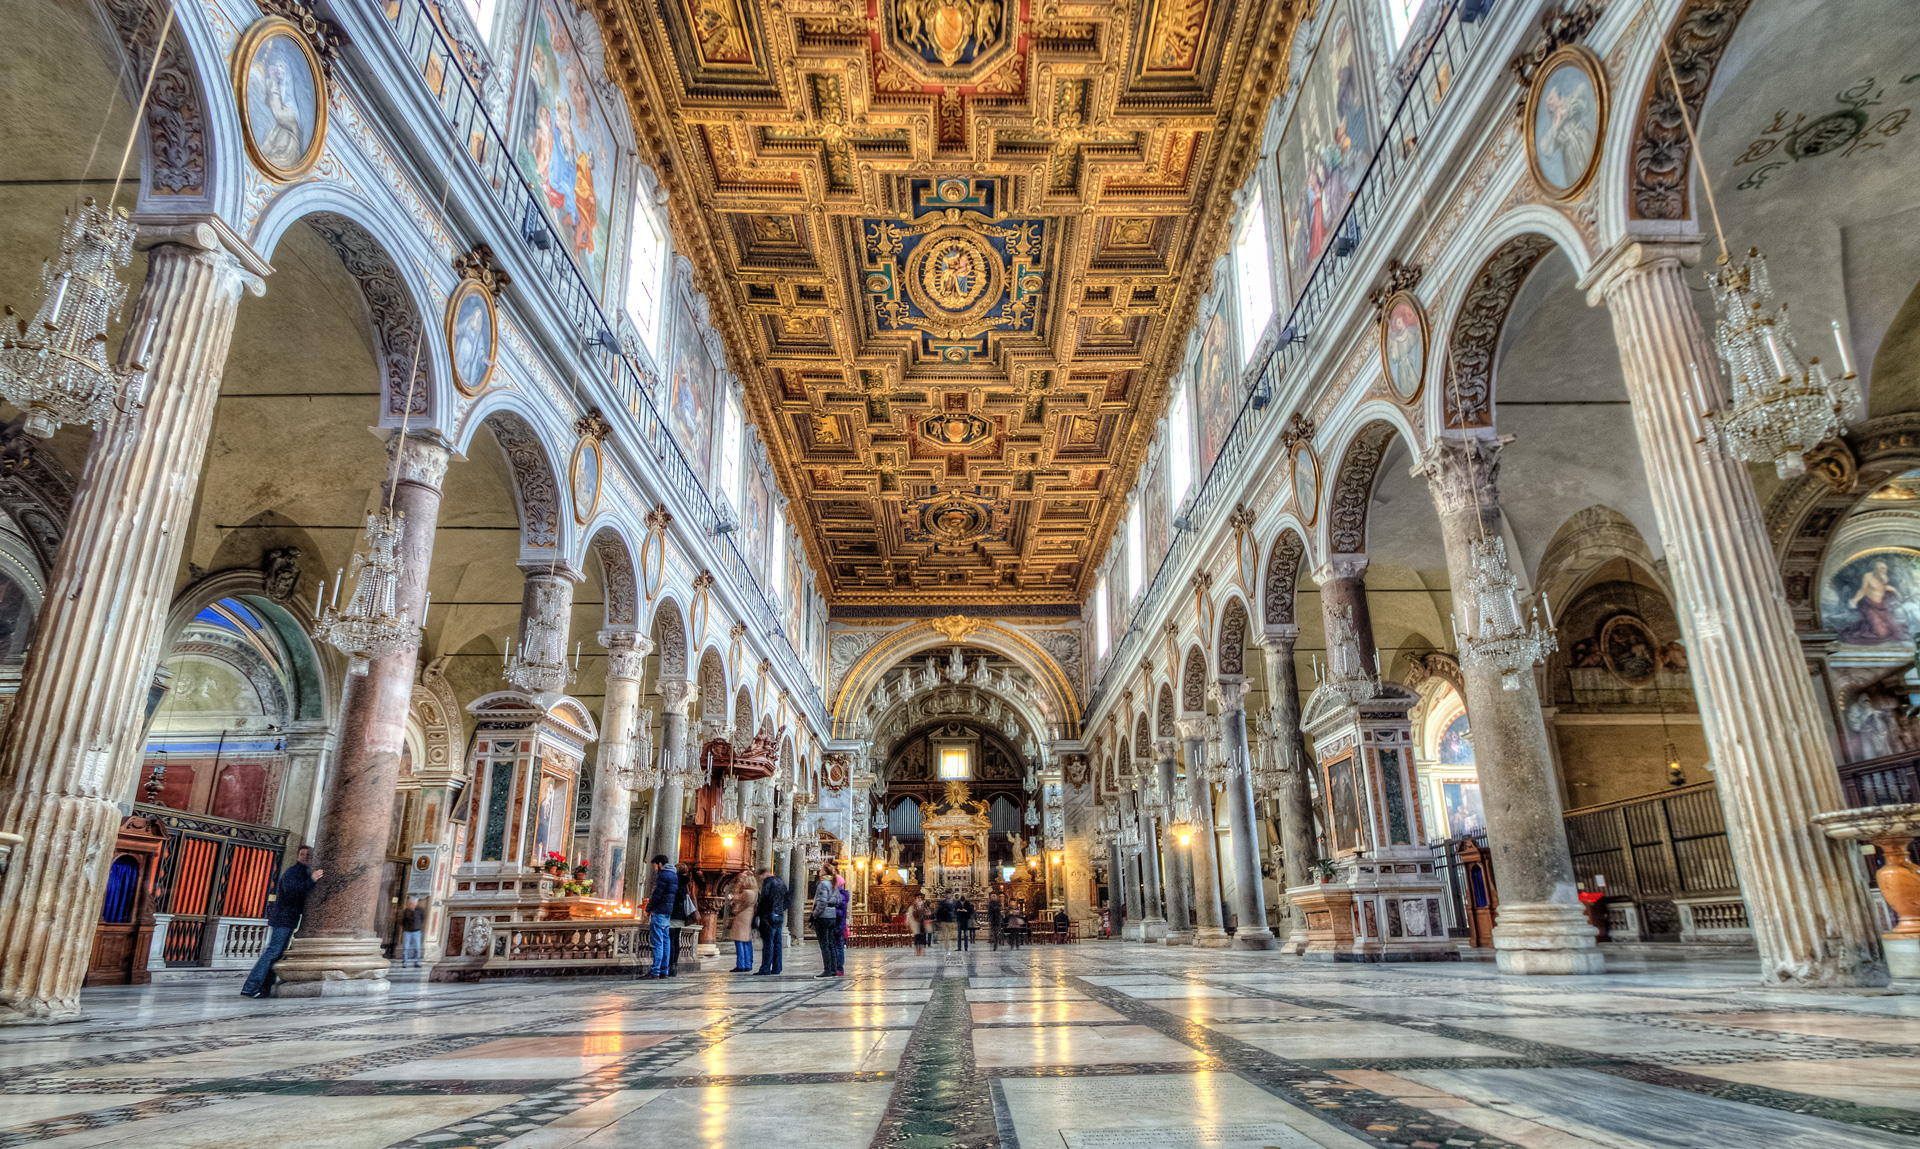 Splendid nave of the Basilica di Santa Maria in Aracoeli